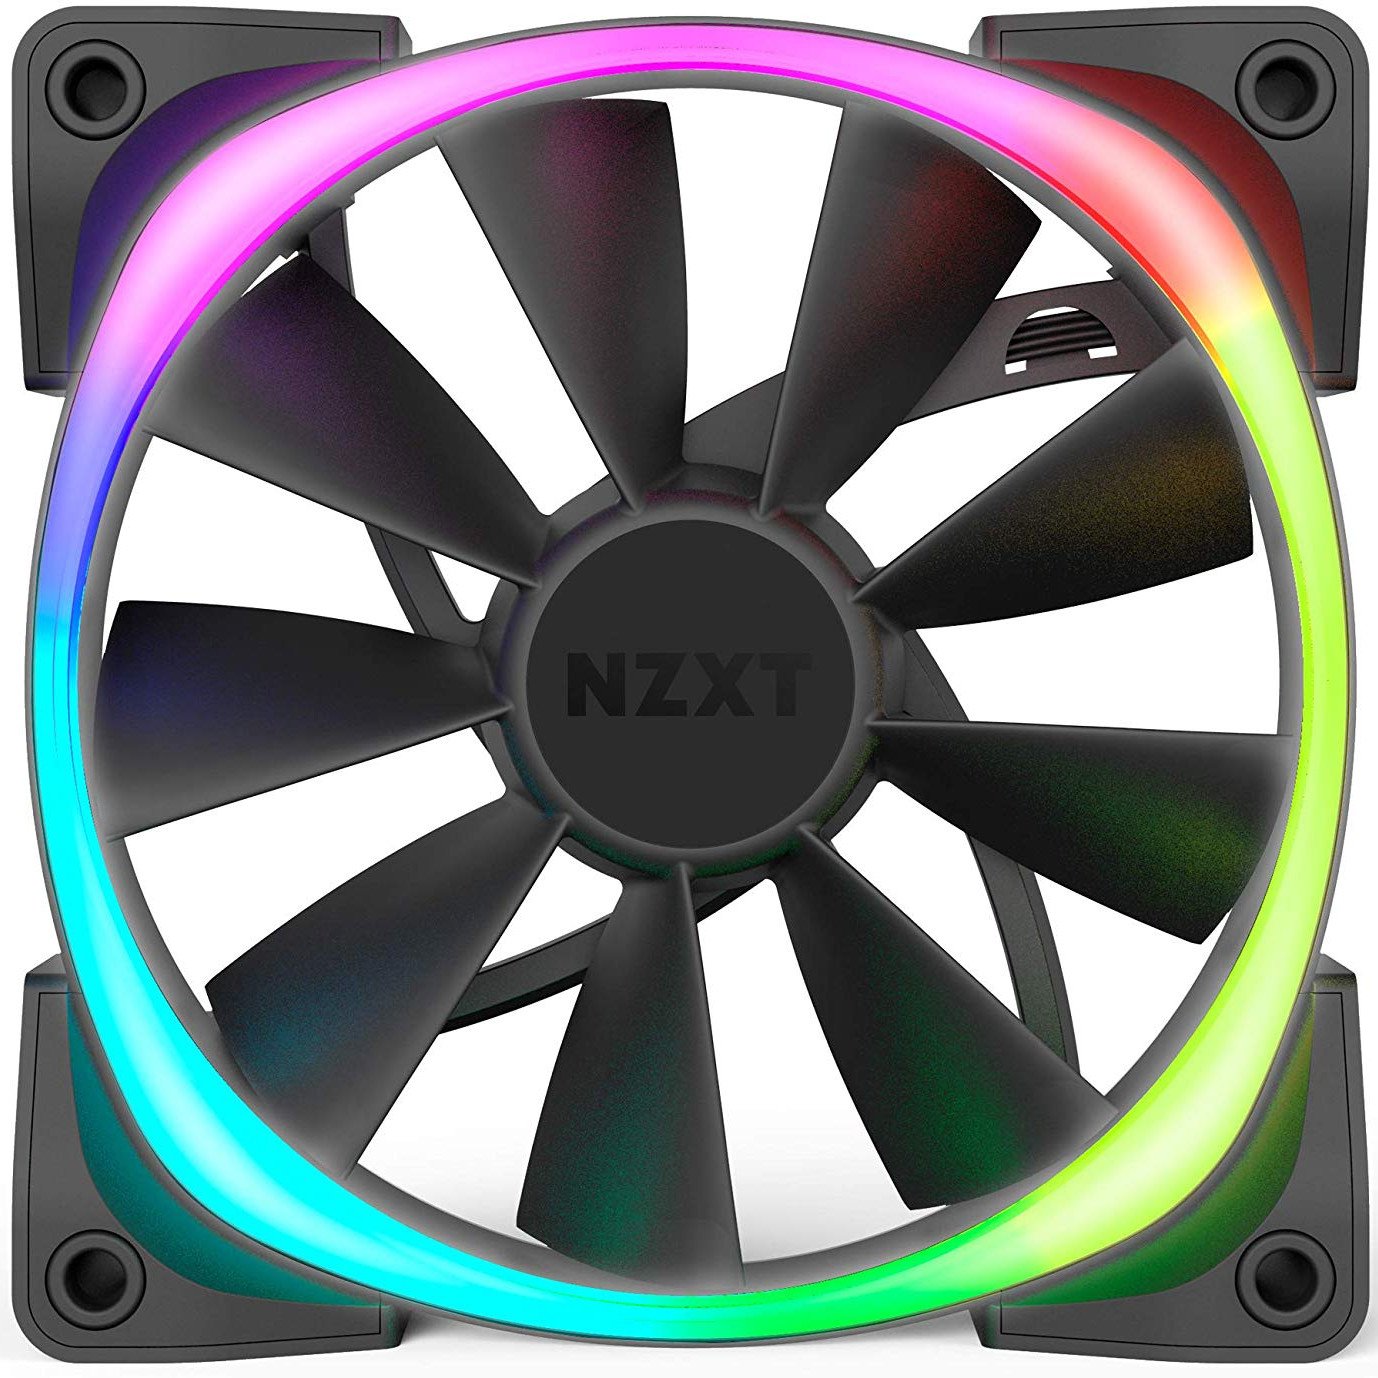 NZXT Aer RGB Fan